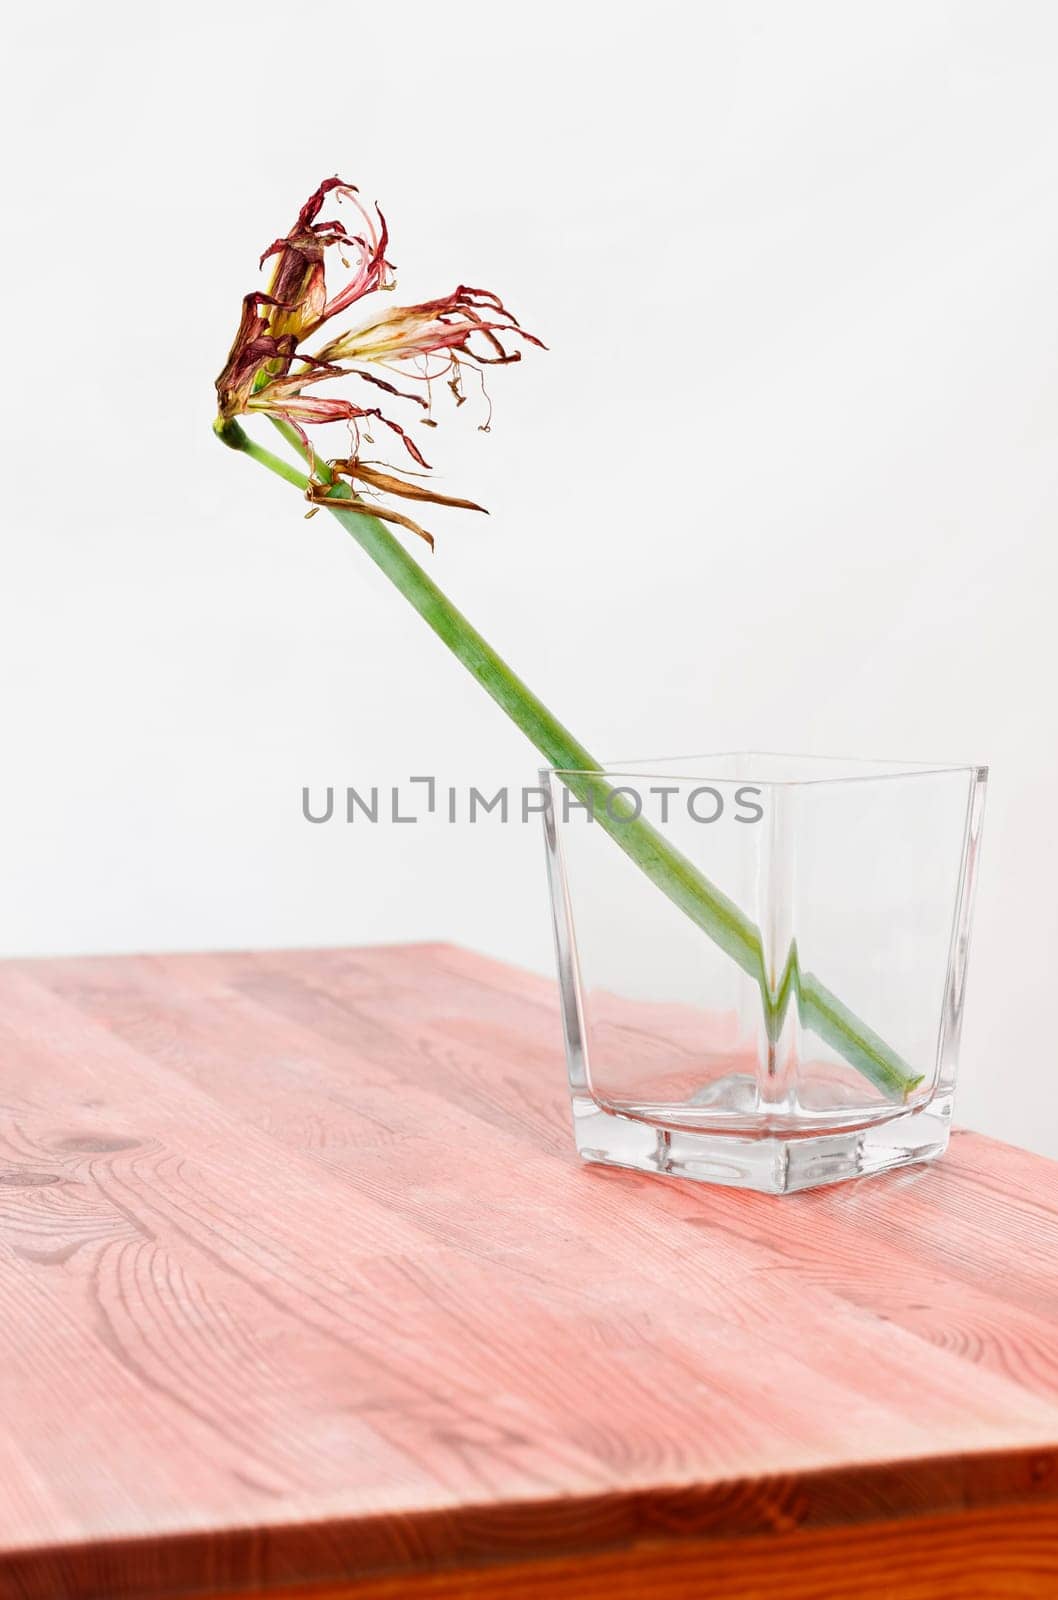 Dry flower of amaryllis in vase by victimewalker